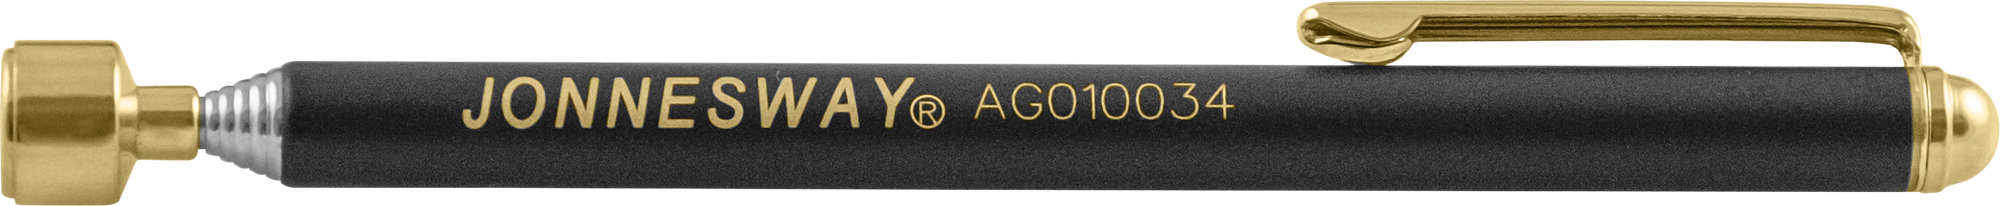 Ручка магнитная телескопическая JONNESWAY AG010034